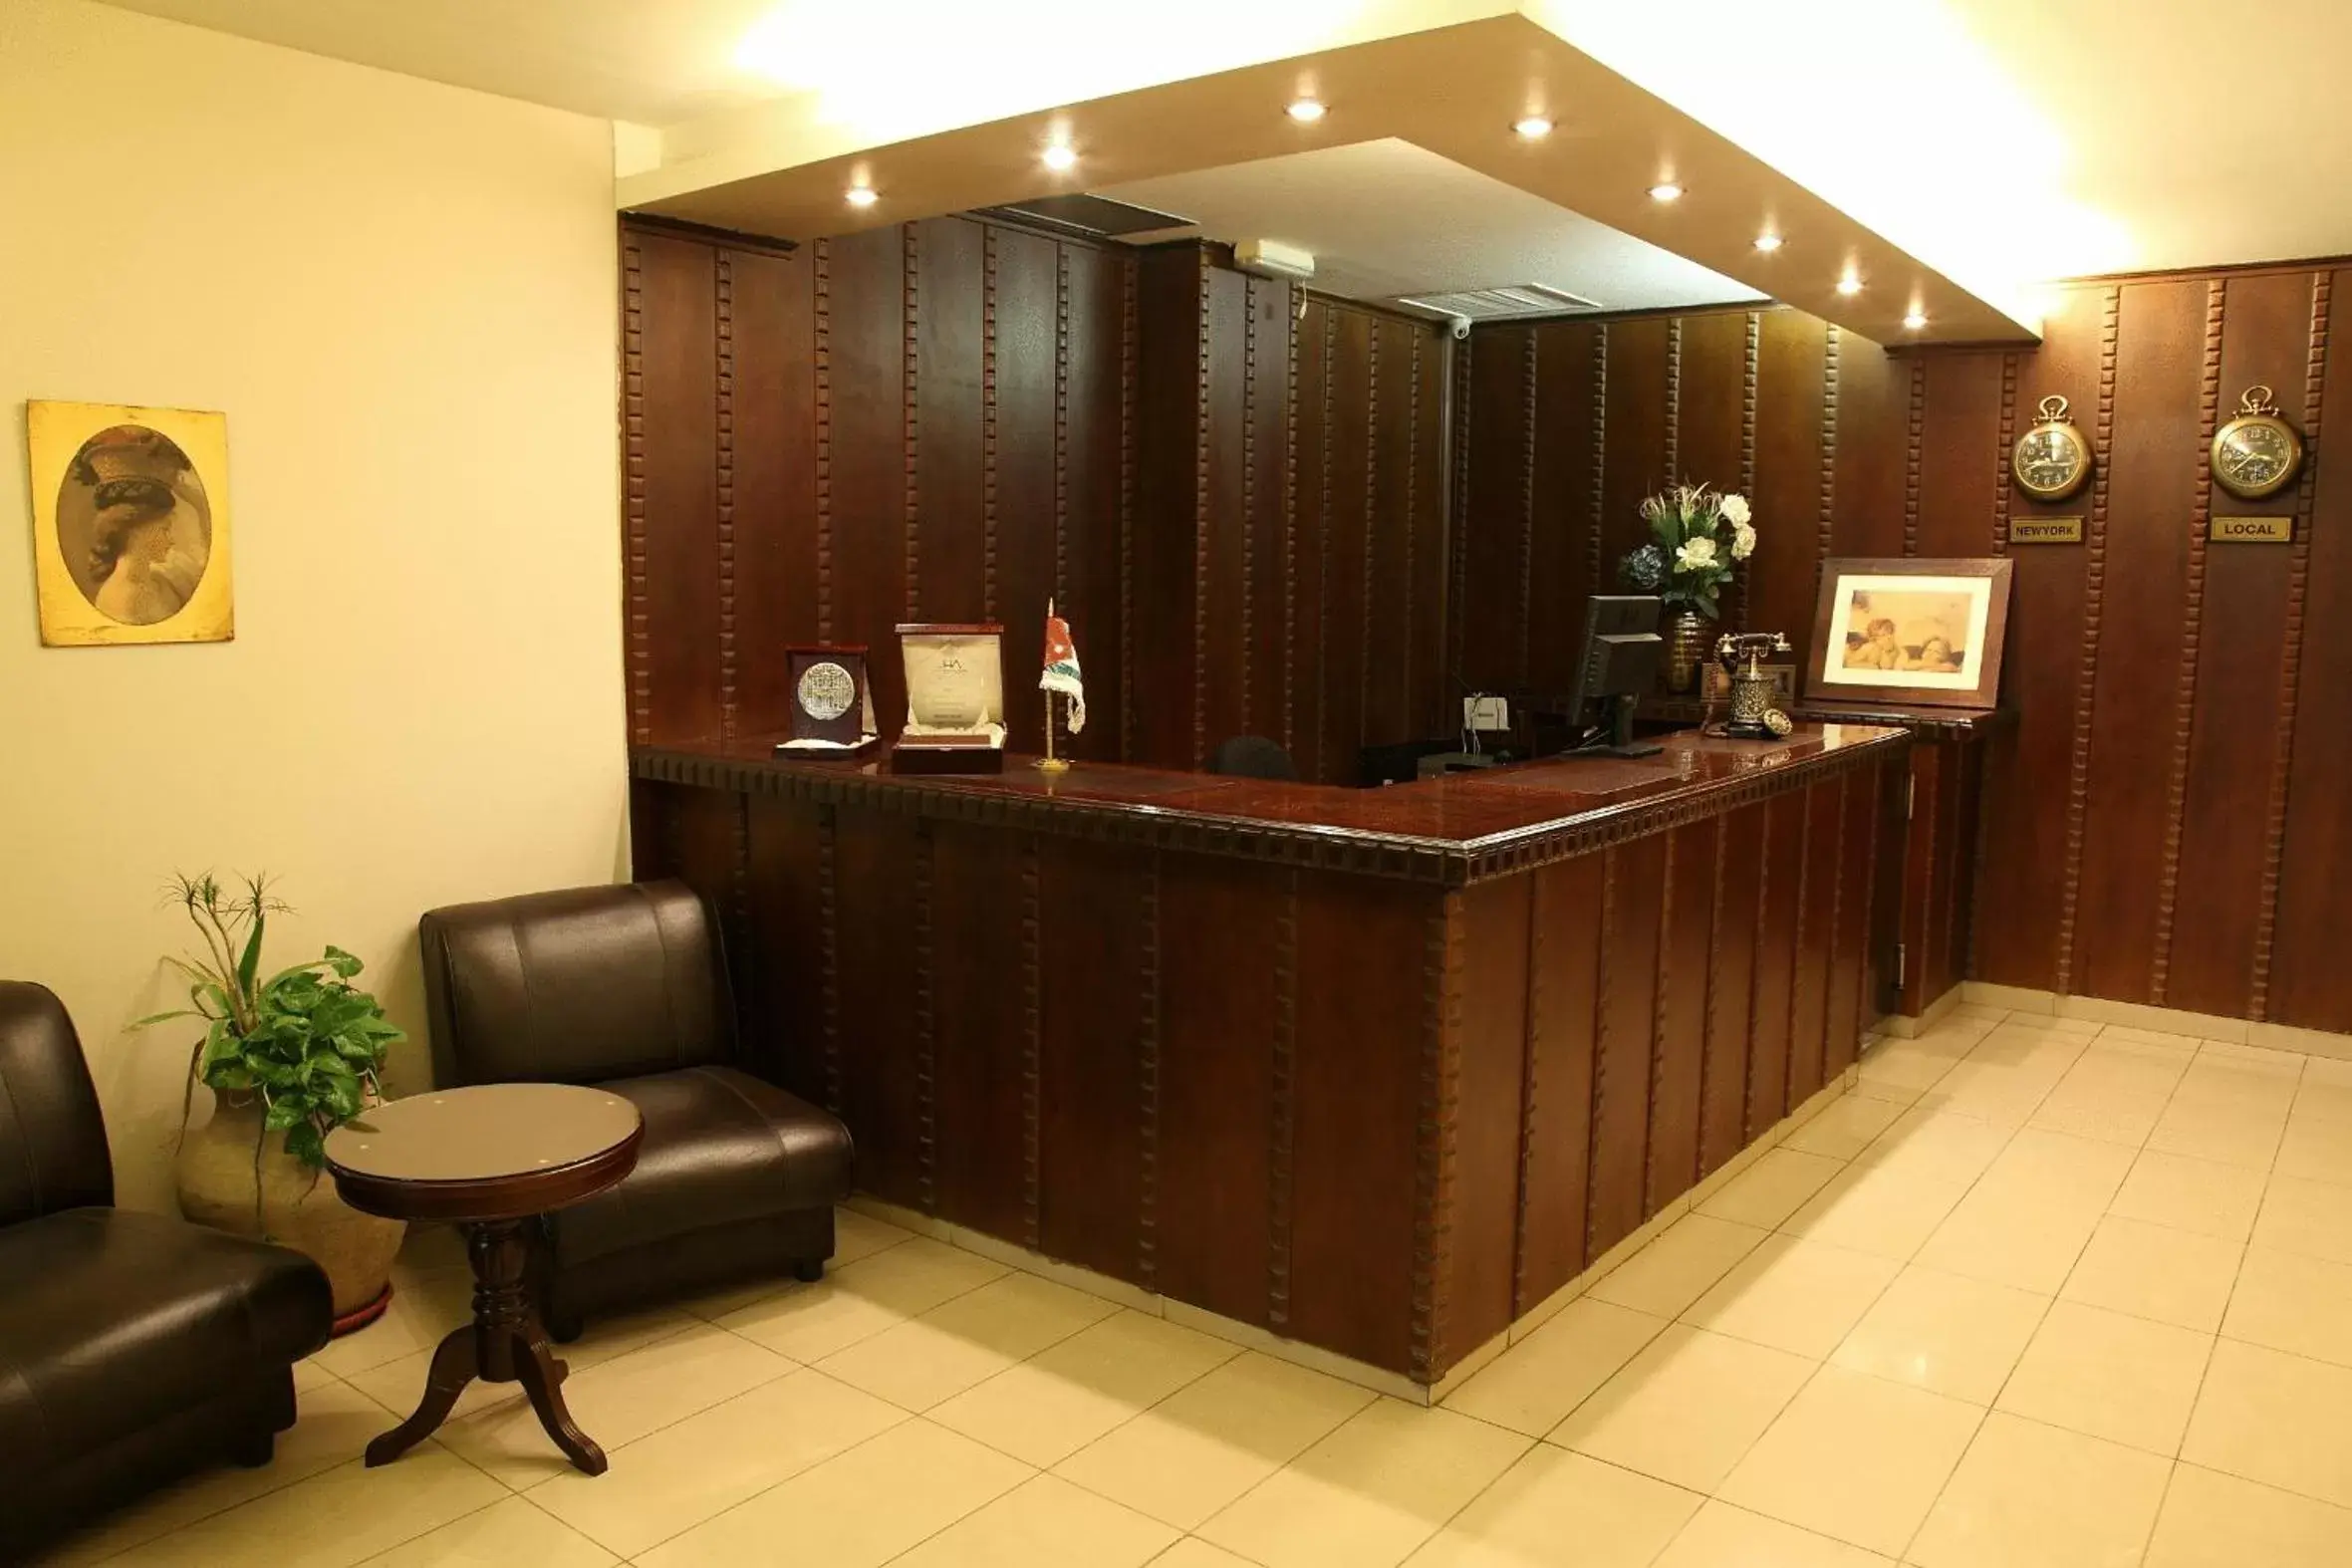 Lobby or reception, Lobby/Reception in Hisham Hotel